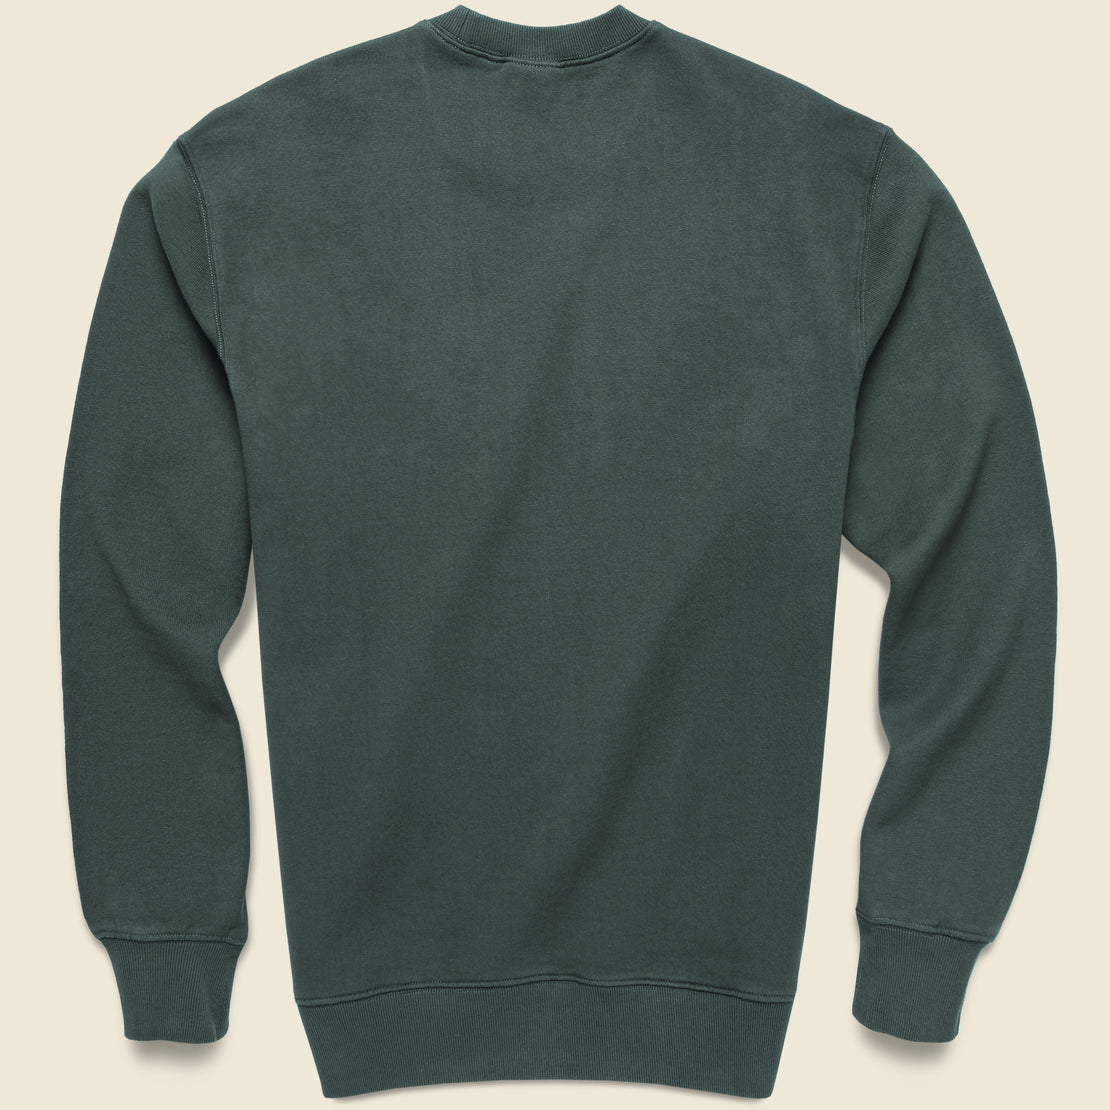 Pocket Sweatshirt - Hemlock Green - Carhartt WIP - STAG Provisions - Tops - Fleece / Sweatshirt